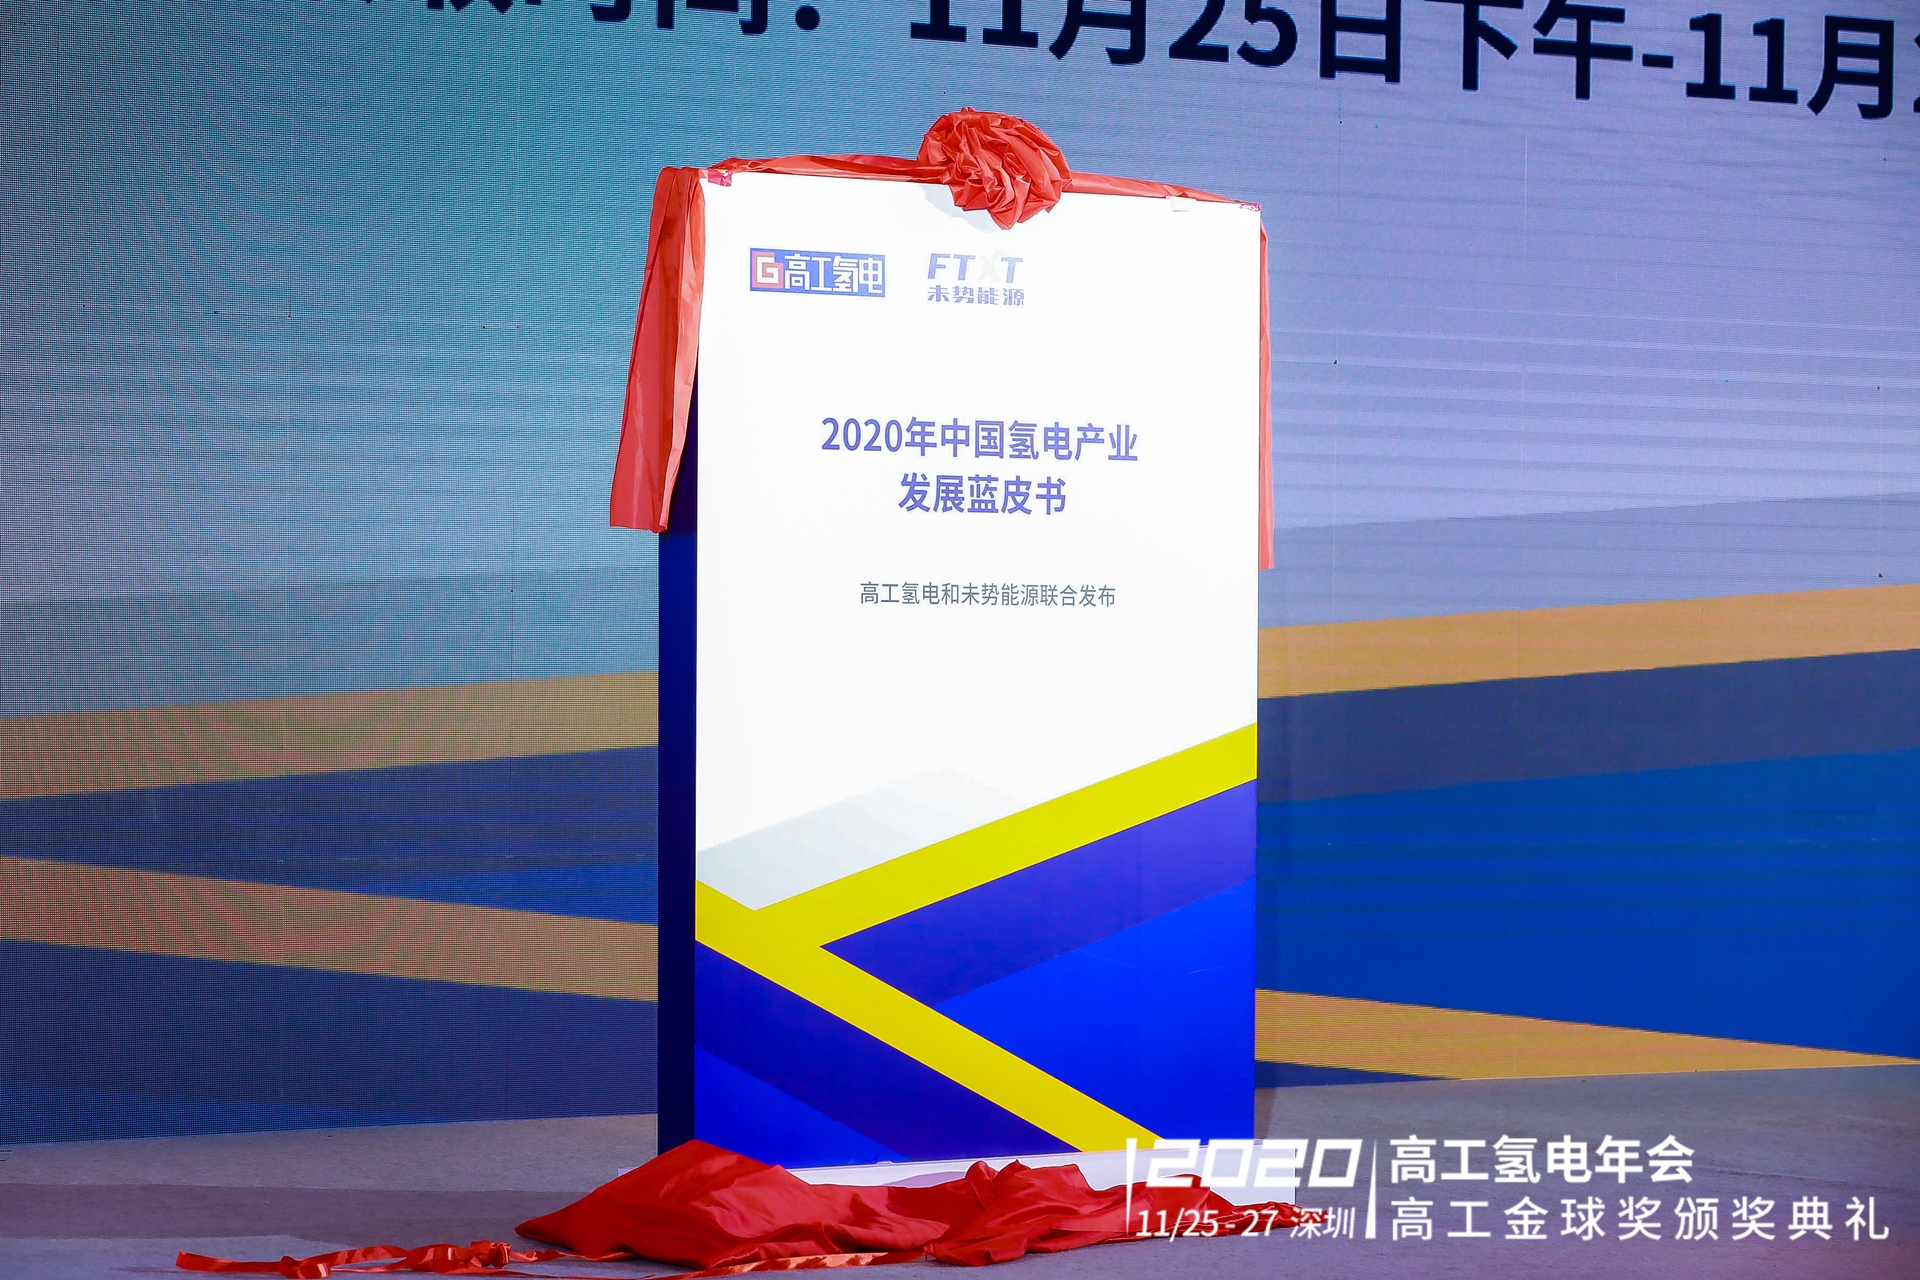 高工产研联合未势能源发布《2020年中国氢电产业发展蓝皮书》